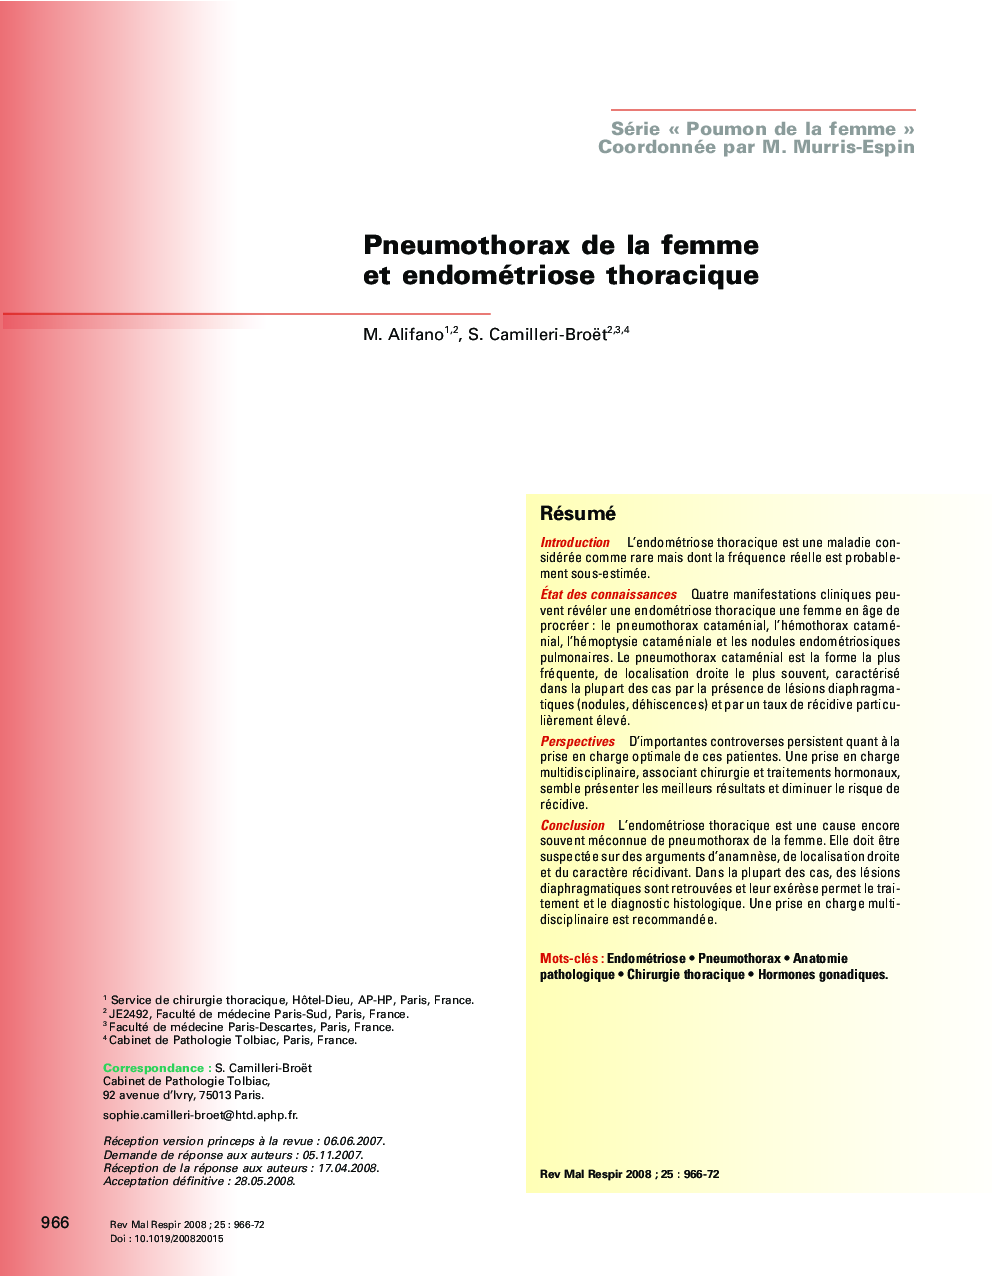 Pneumothorax de la femme et endométriose thoracique